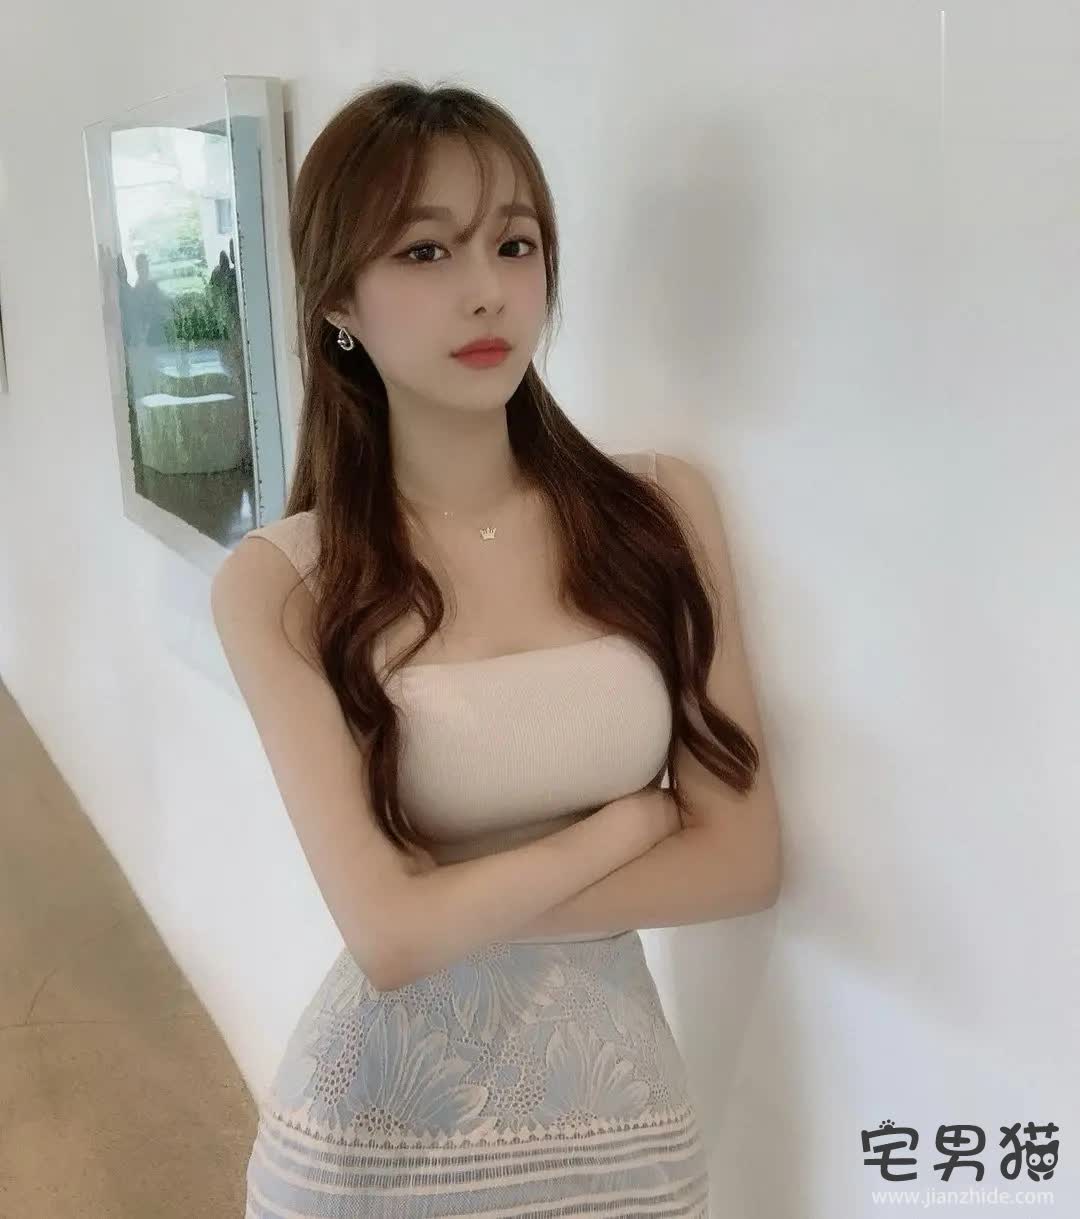 【共6图】韩国超模美女思云(3533373037)性感身材s形曲线大